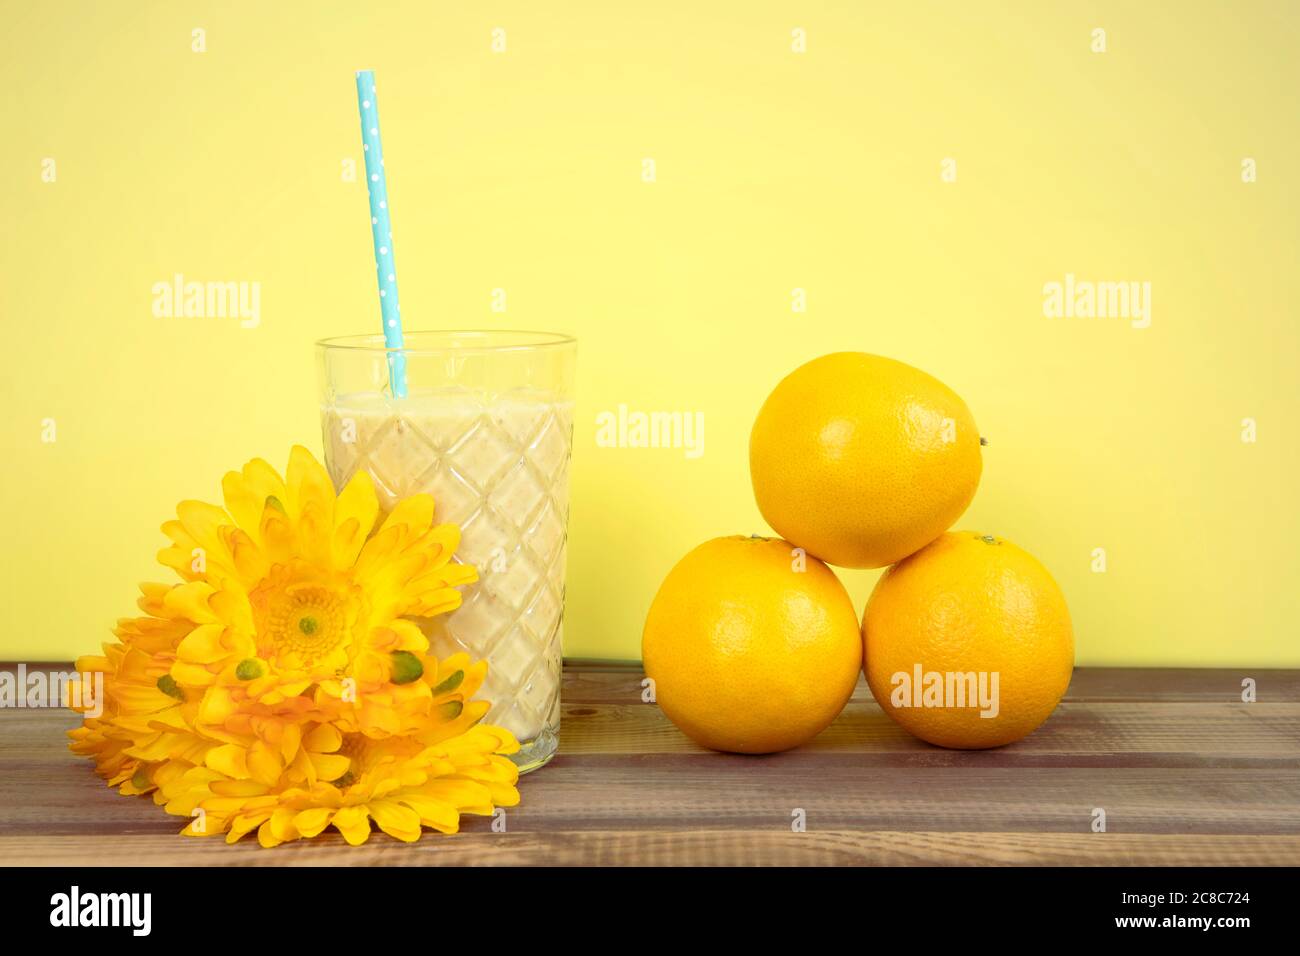 Cocktail di frutta in stile retrò in estate. Frullato giallo in vetro con disposizione di paglia, frutta arancio e fiori. Foto Stock